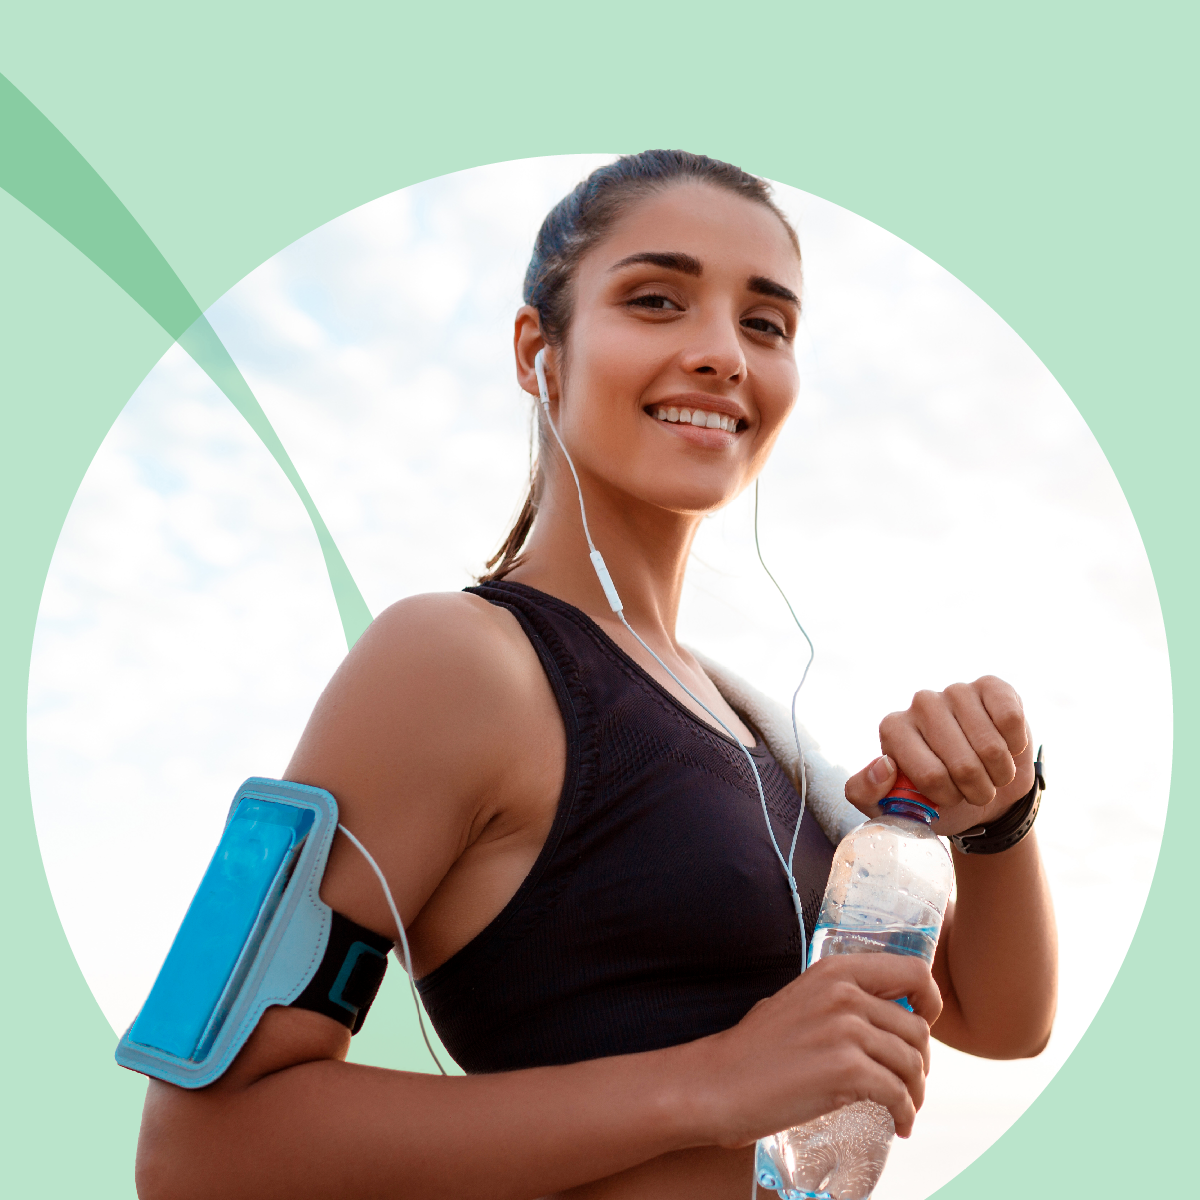 Lächelnde junge Frau in Sportkleidung mit Kopfhörern und einer Trinkflasche, betont durch einen mintgrünen Kreis, der Aktivität und Gesundheit repräsentiert.